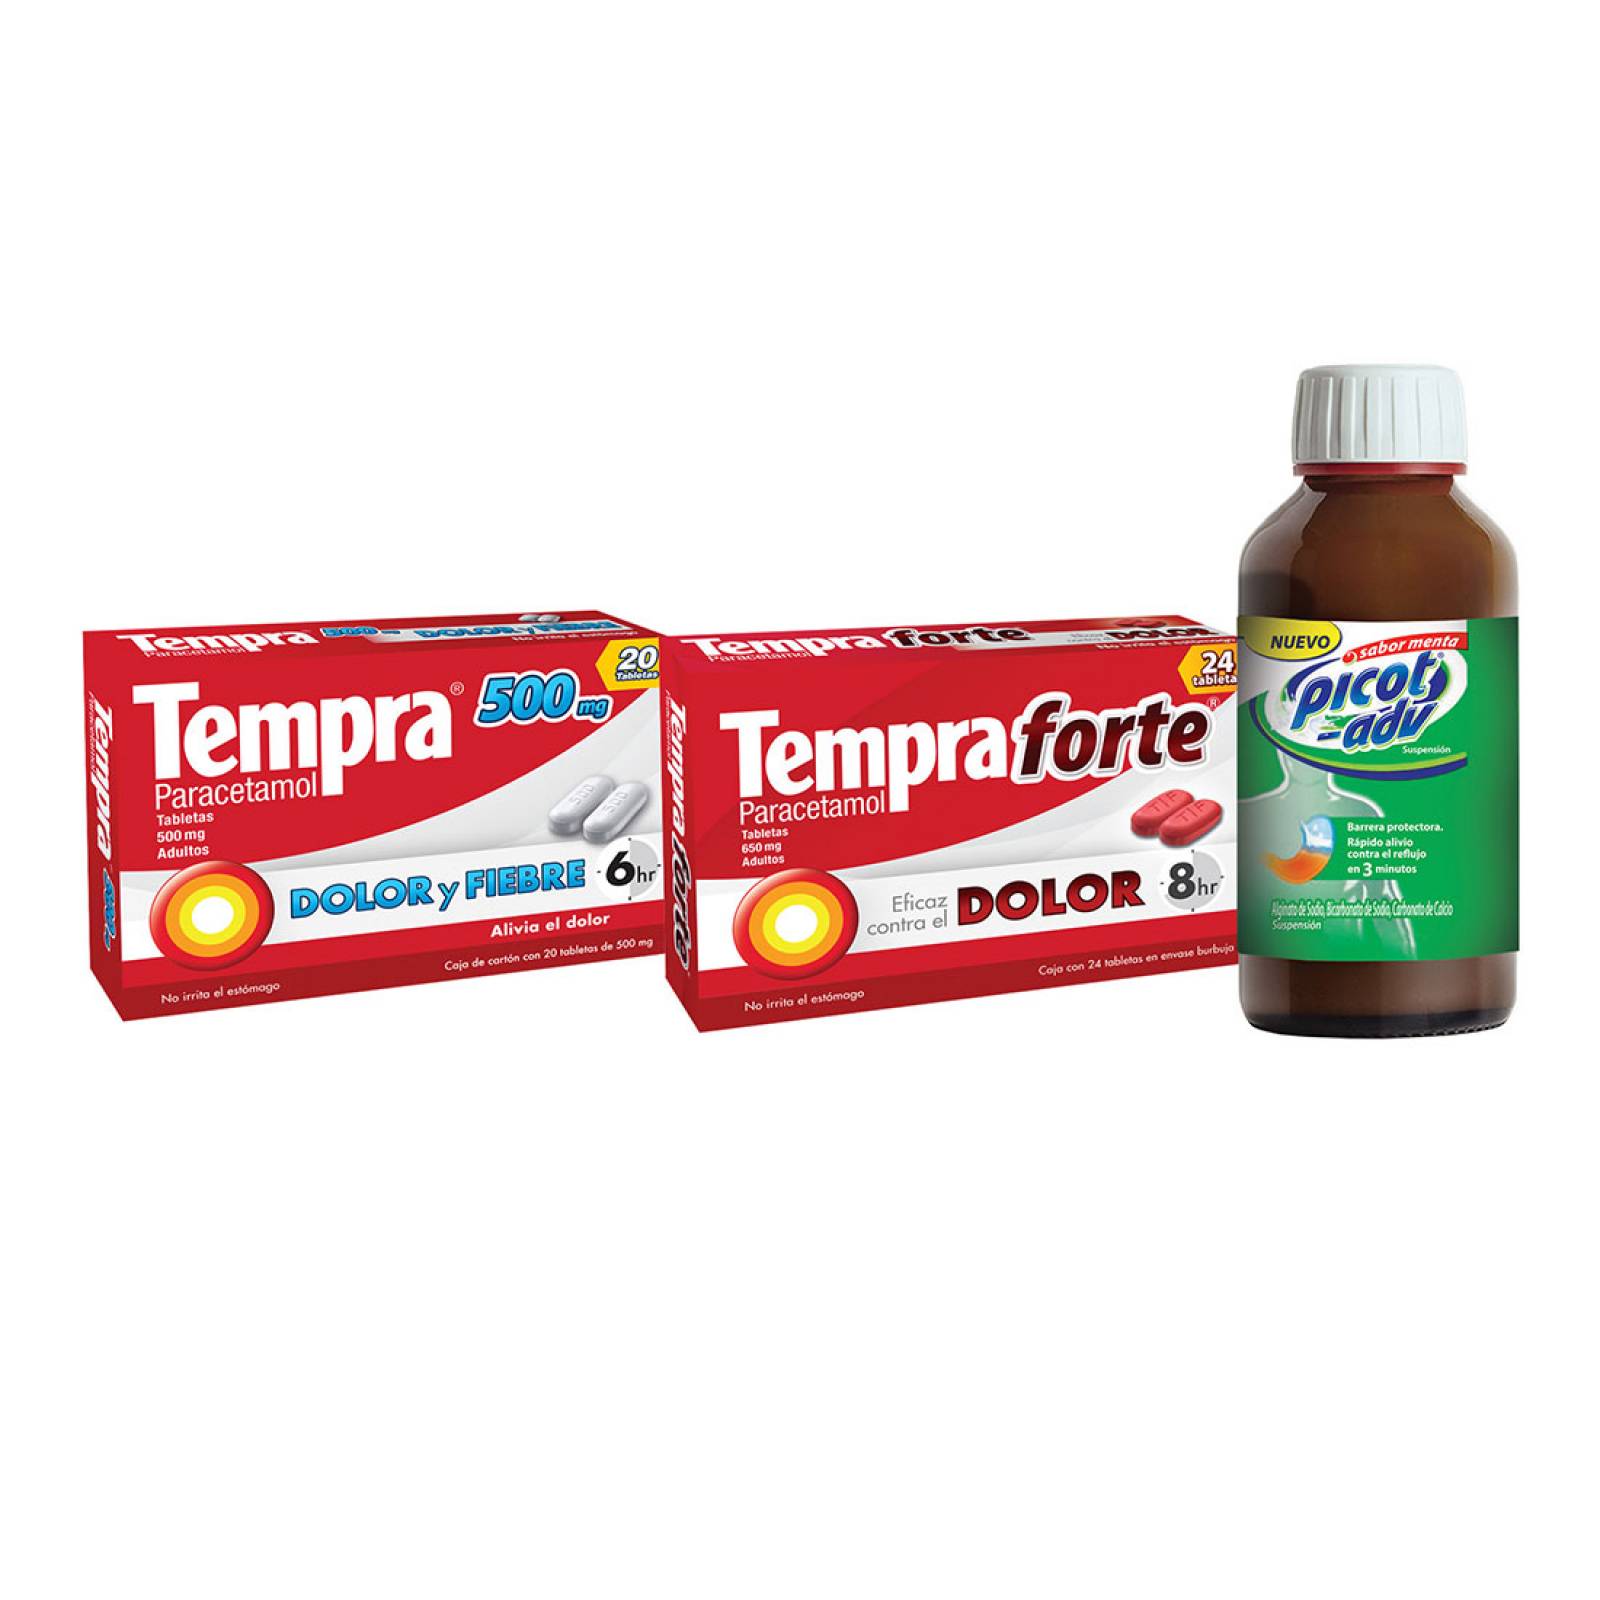 Kit Tempra 500 mg+ Tempra Forte+ Picot Adv Suspensión Frasco